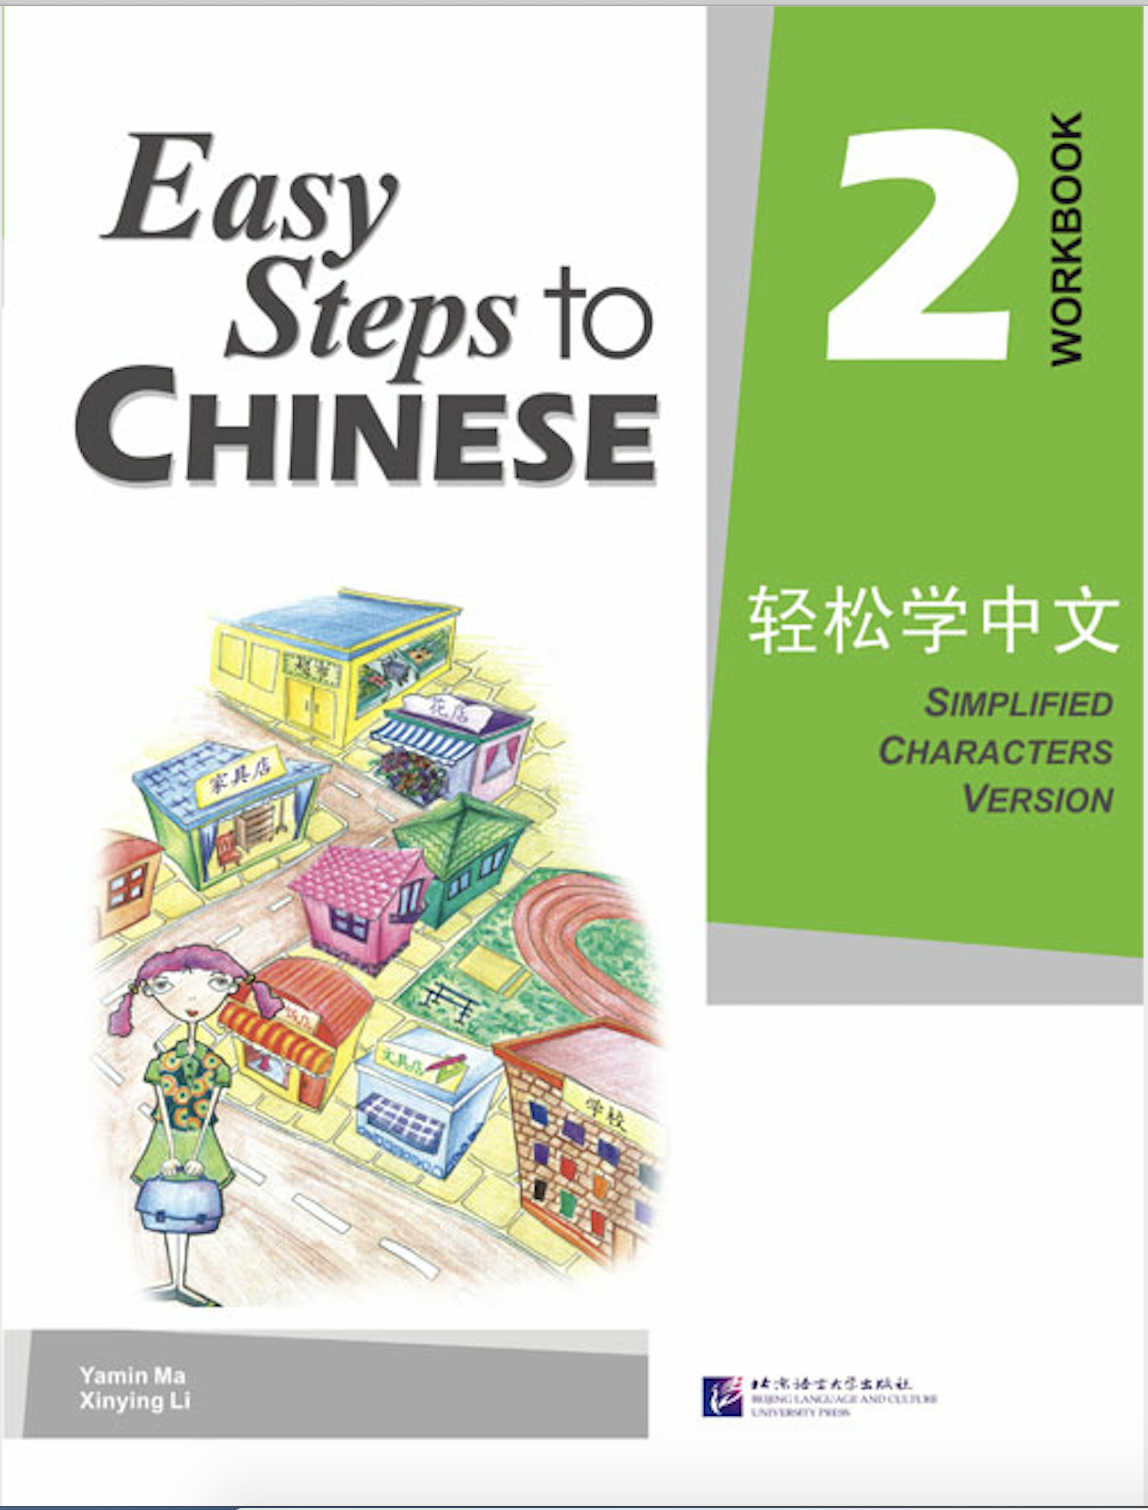 แบบฝึกหัด Easy Steps to Chinese เล่ม 2 Easy Steps to Chinese Vol. 2 - Workbook 轻松学中文2:练习册 95%NEW